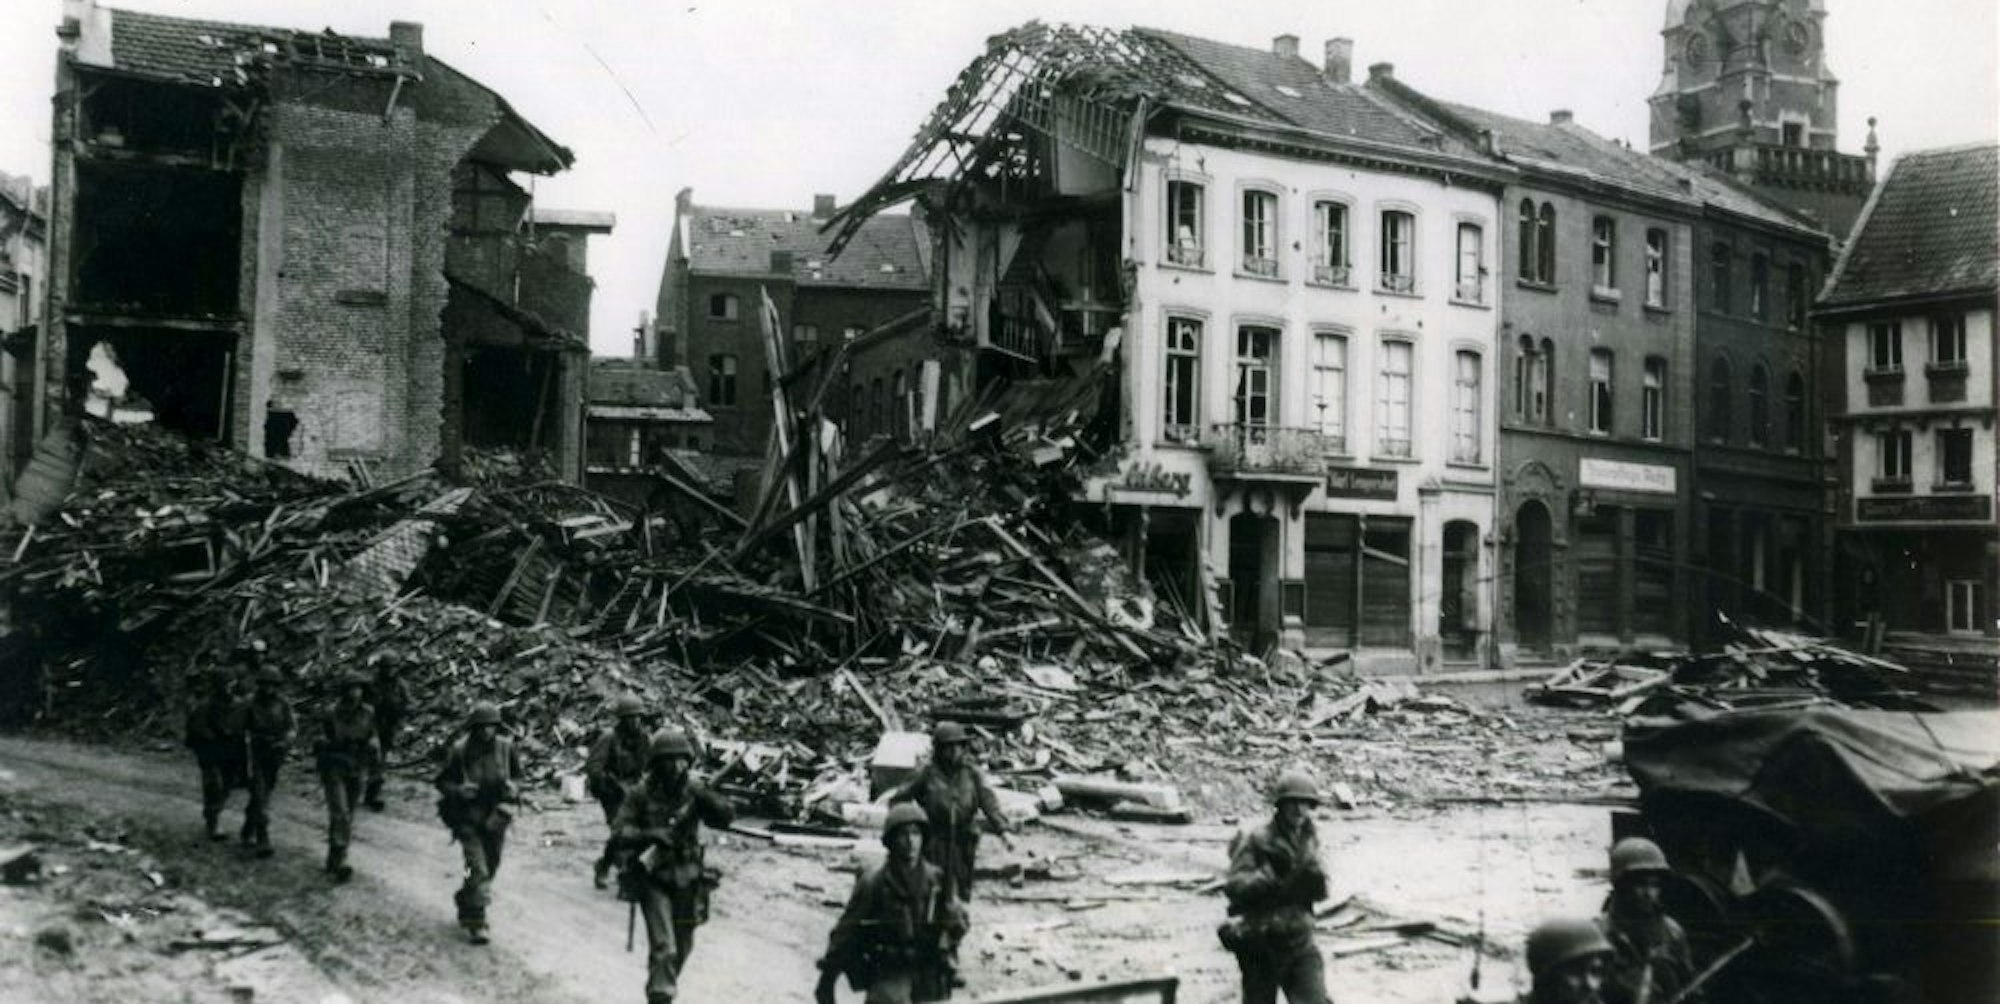 Als die Amerikaner 1945 den Alten Markt erreichten, waren viele Gebäude zerstört.